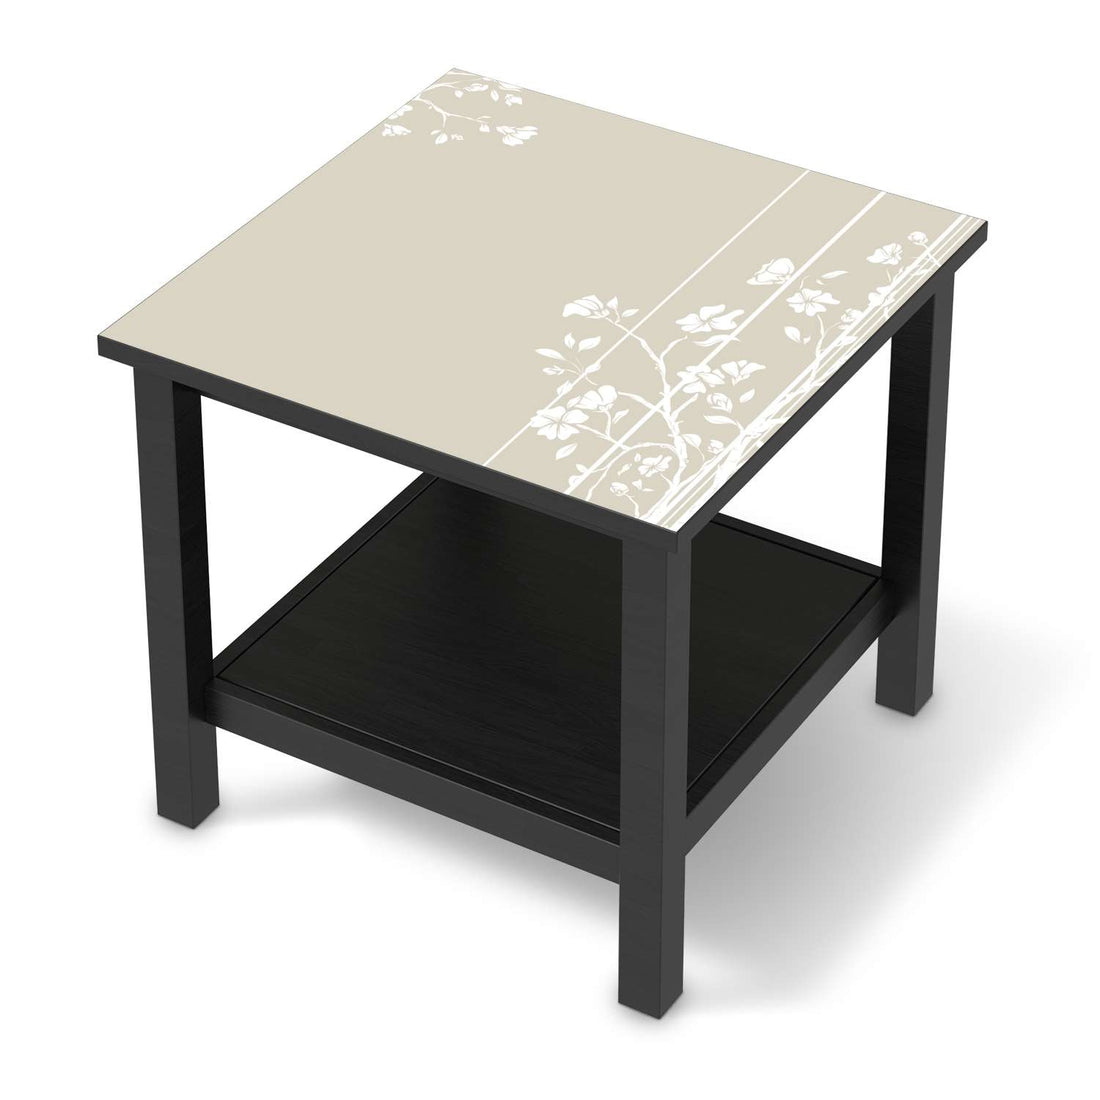 Möbel Klebefolie Florals Plain 3 - IKEA Hemnes Beistelltisch 55x55 cm - schwarz